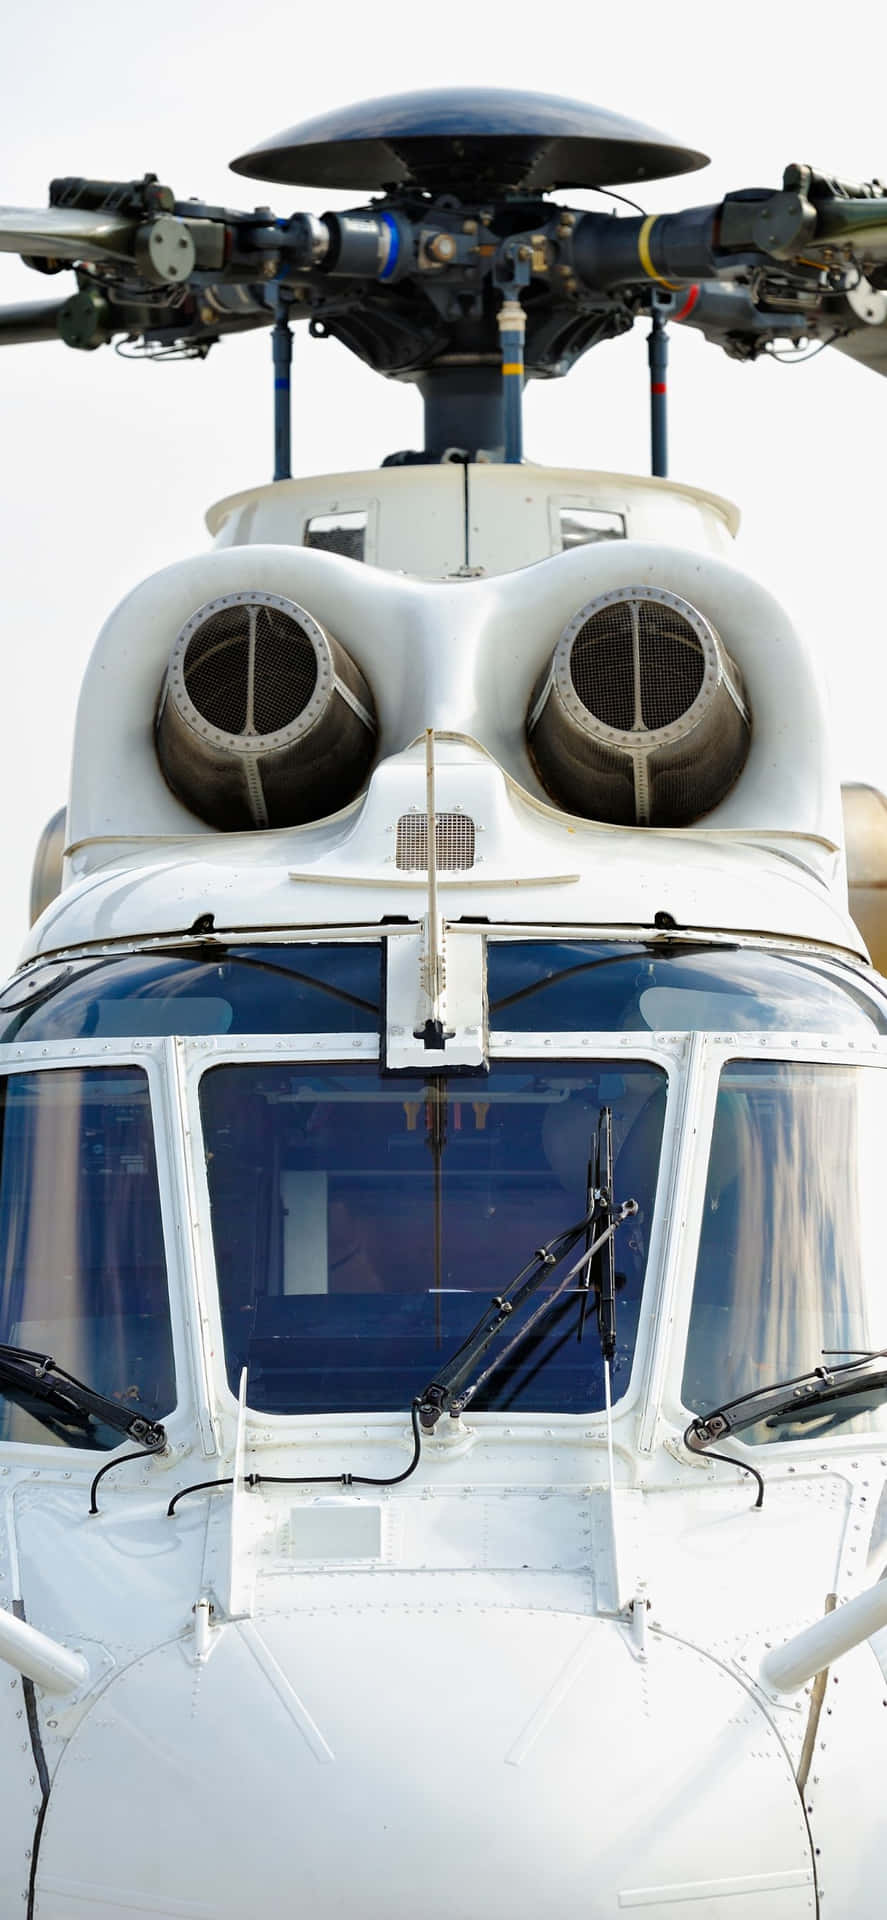 Bildljust Färgade Helikoptrar Mot En Blå Himmelbakgrund På En Iphone Xs Max.